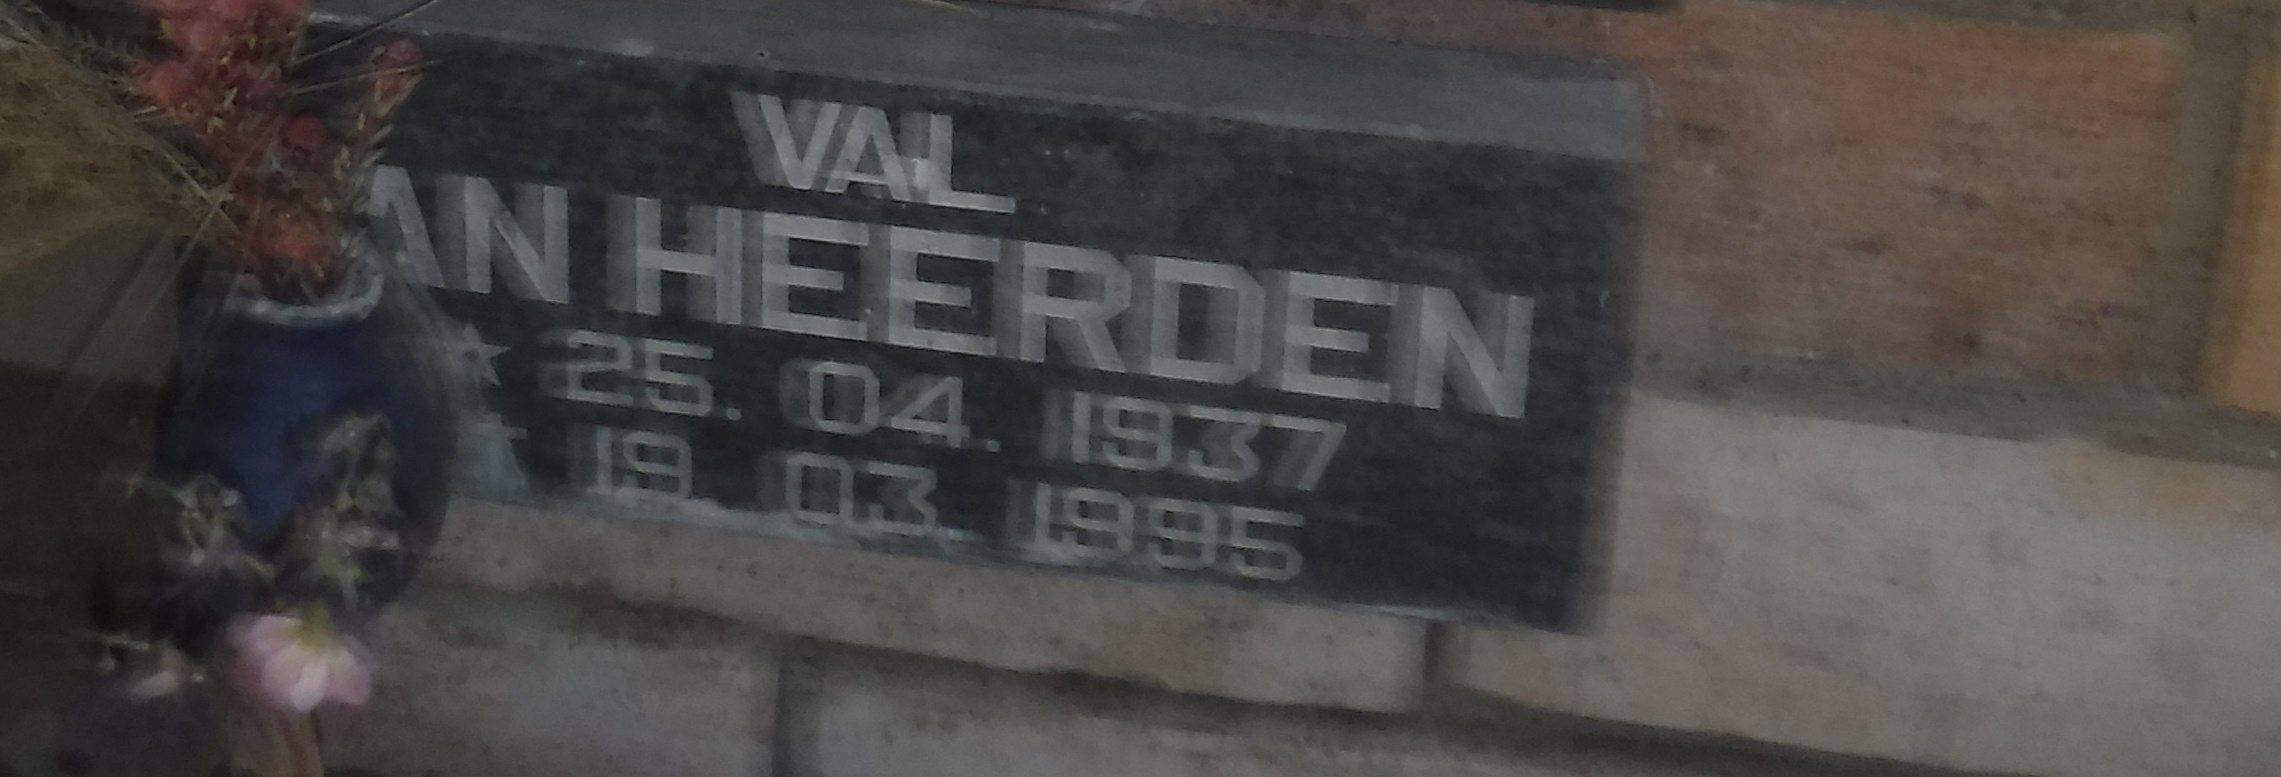 HEERDEN Val, van 1937-1995